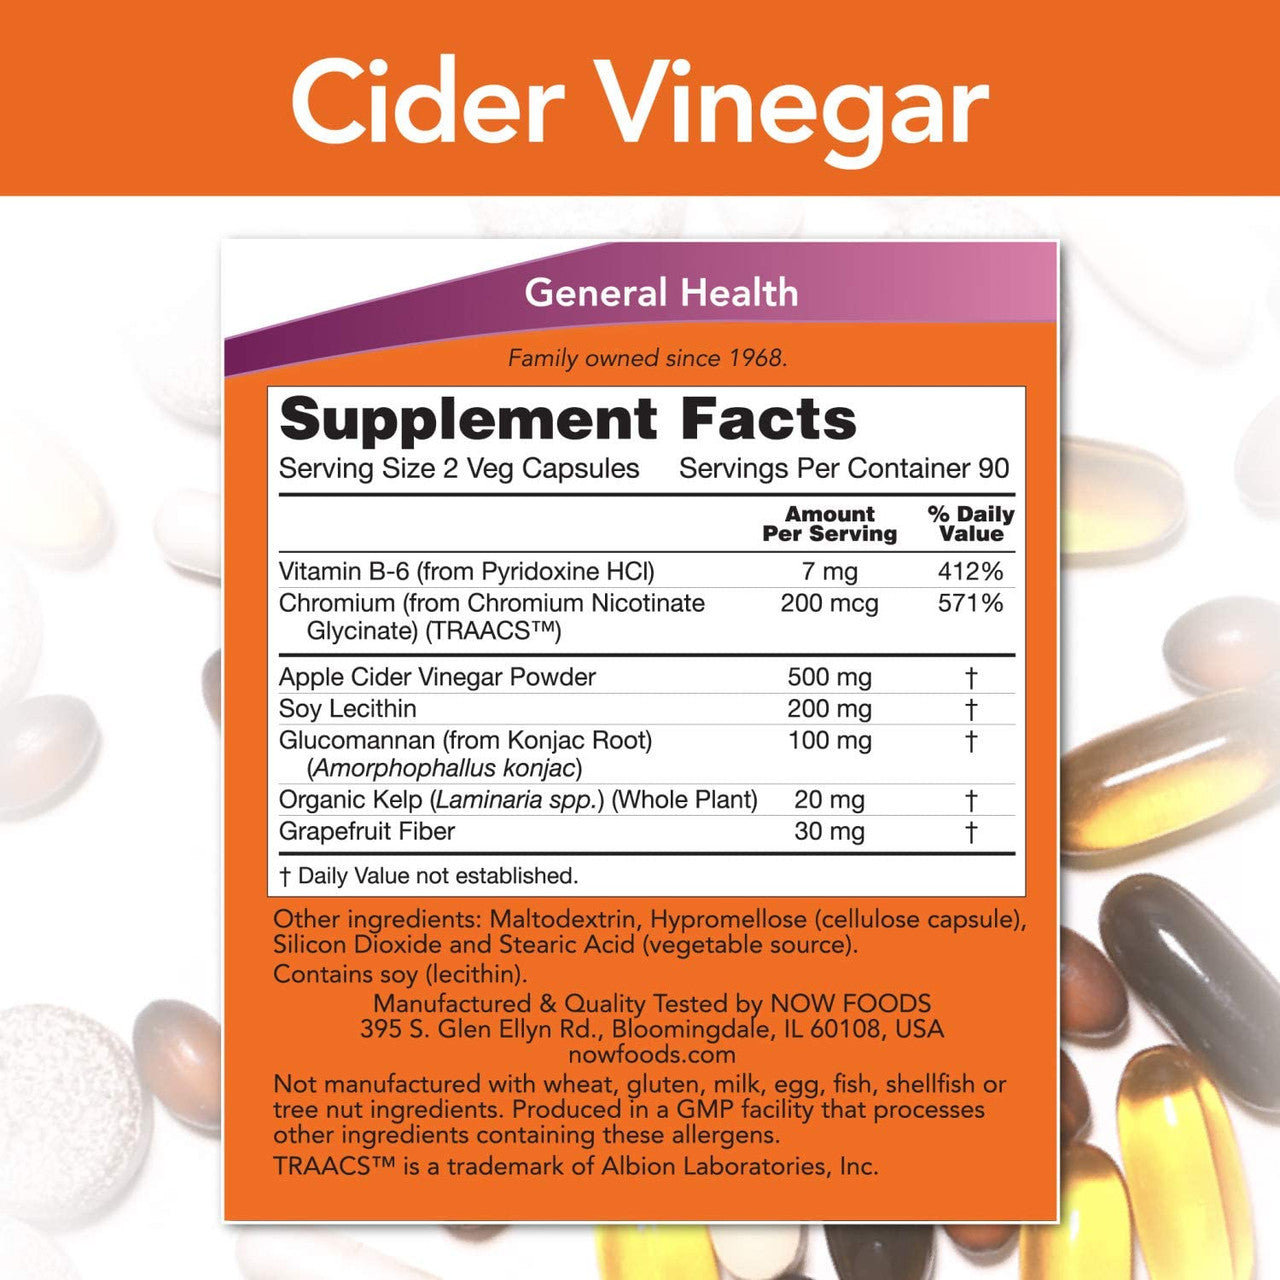 Now Cider Vinegar Diet supplement facts